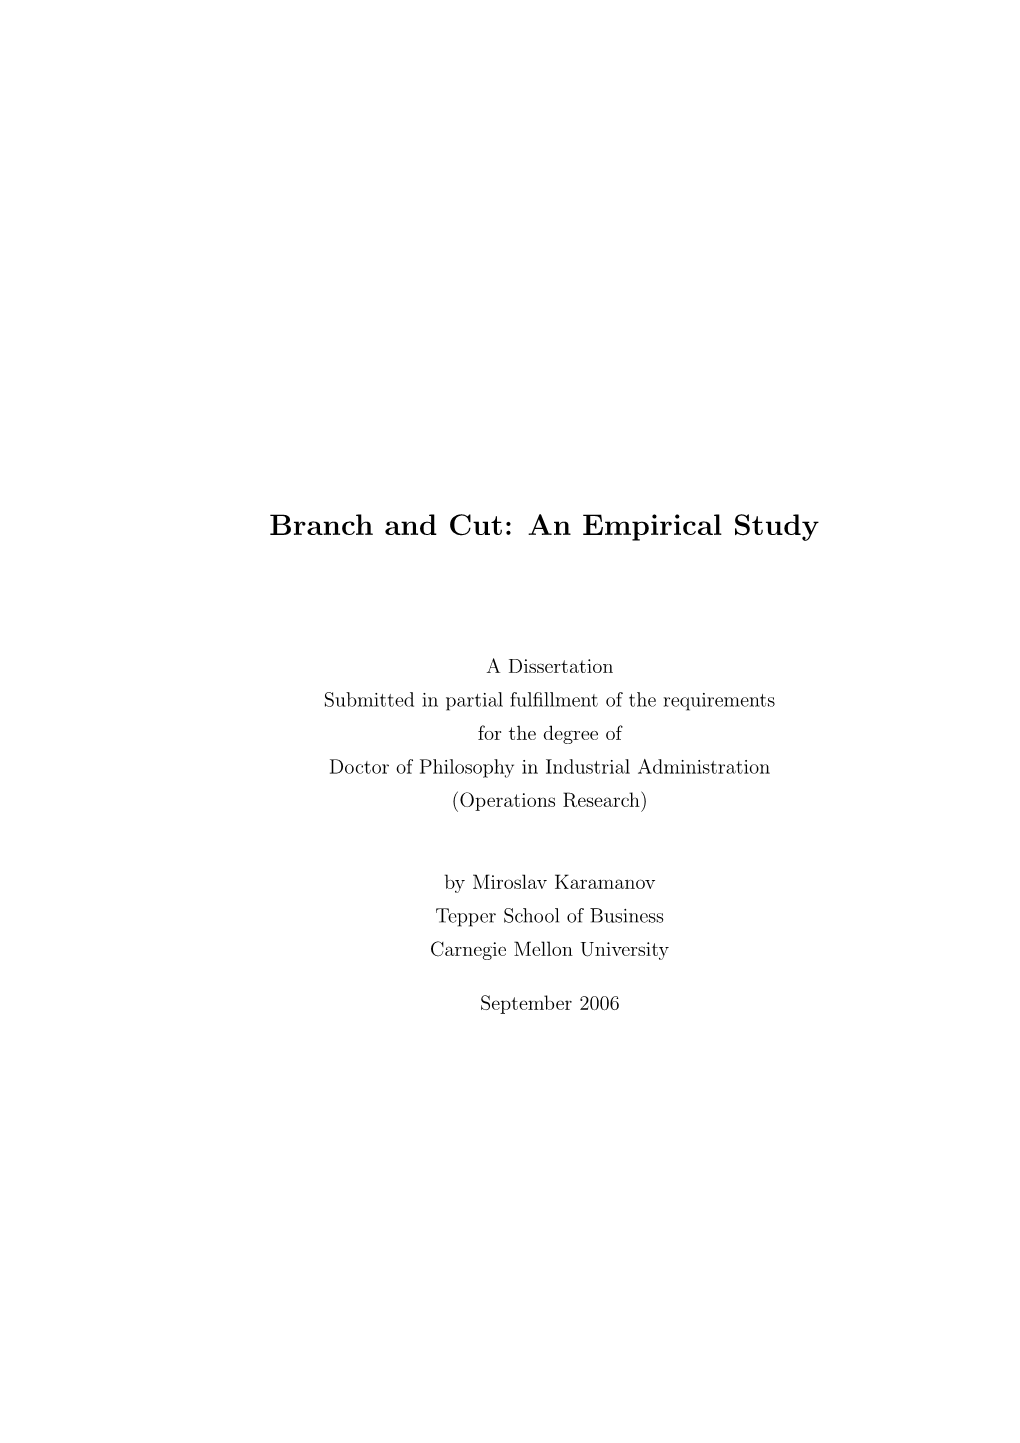 Branch and Cut: an Empirical Study